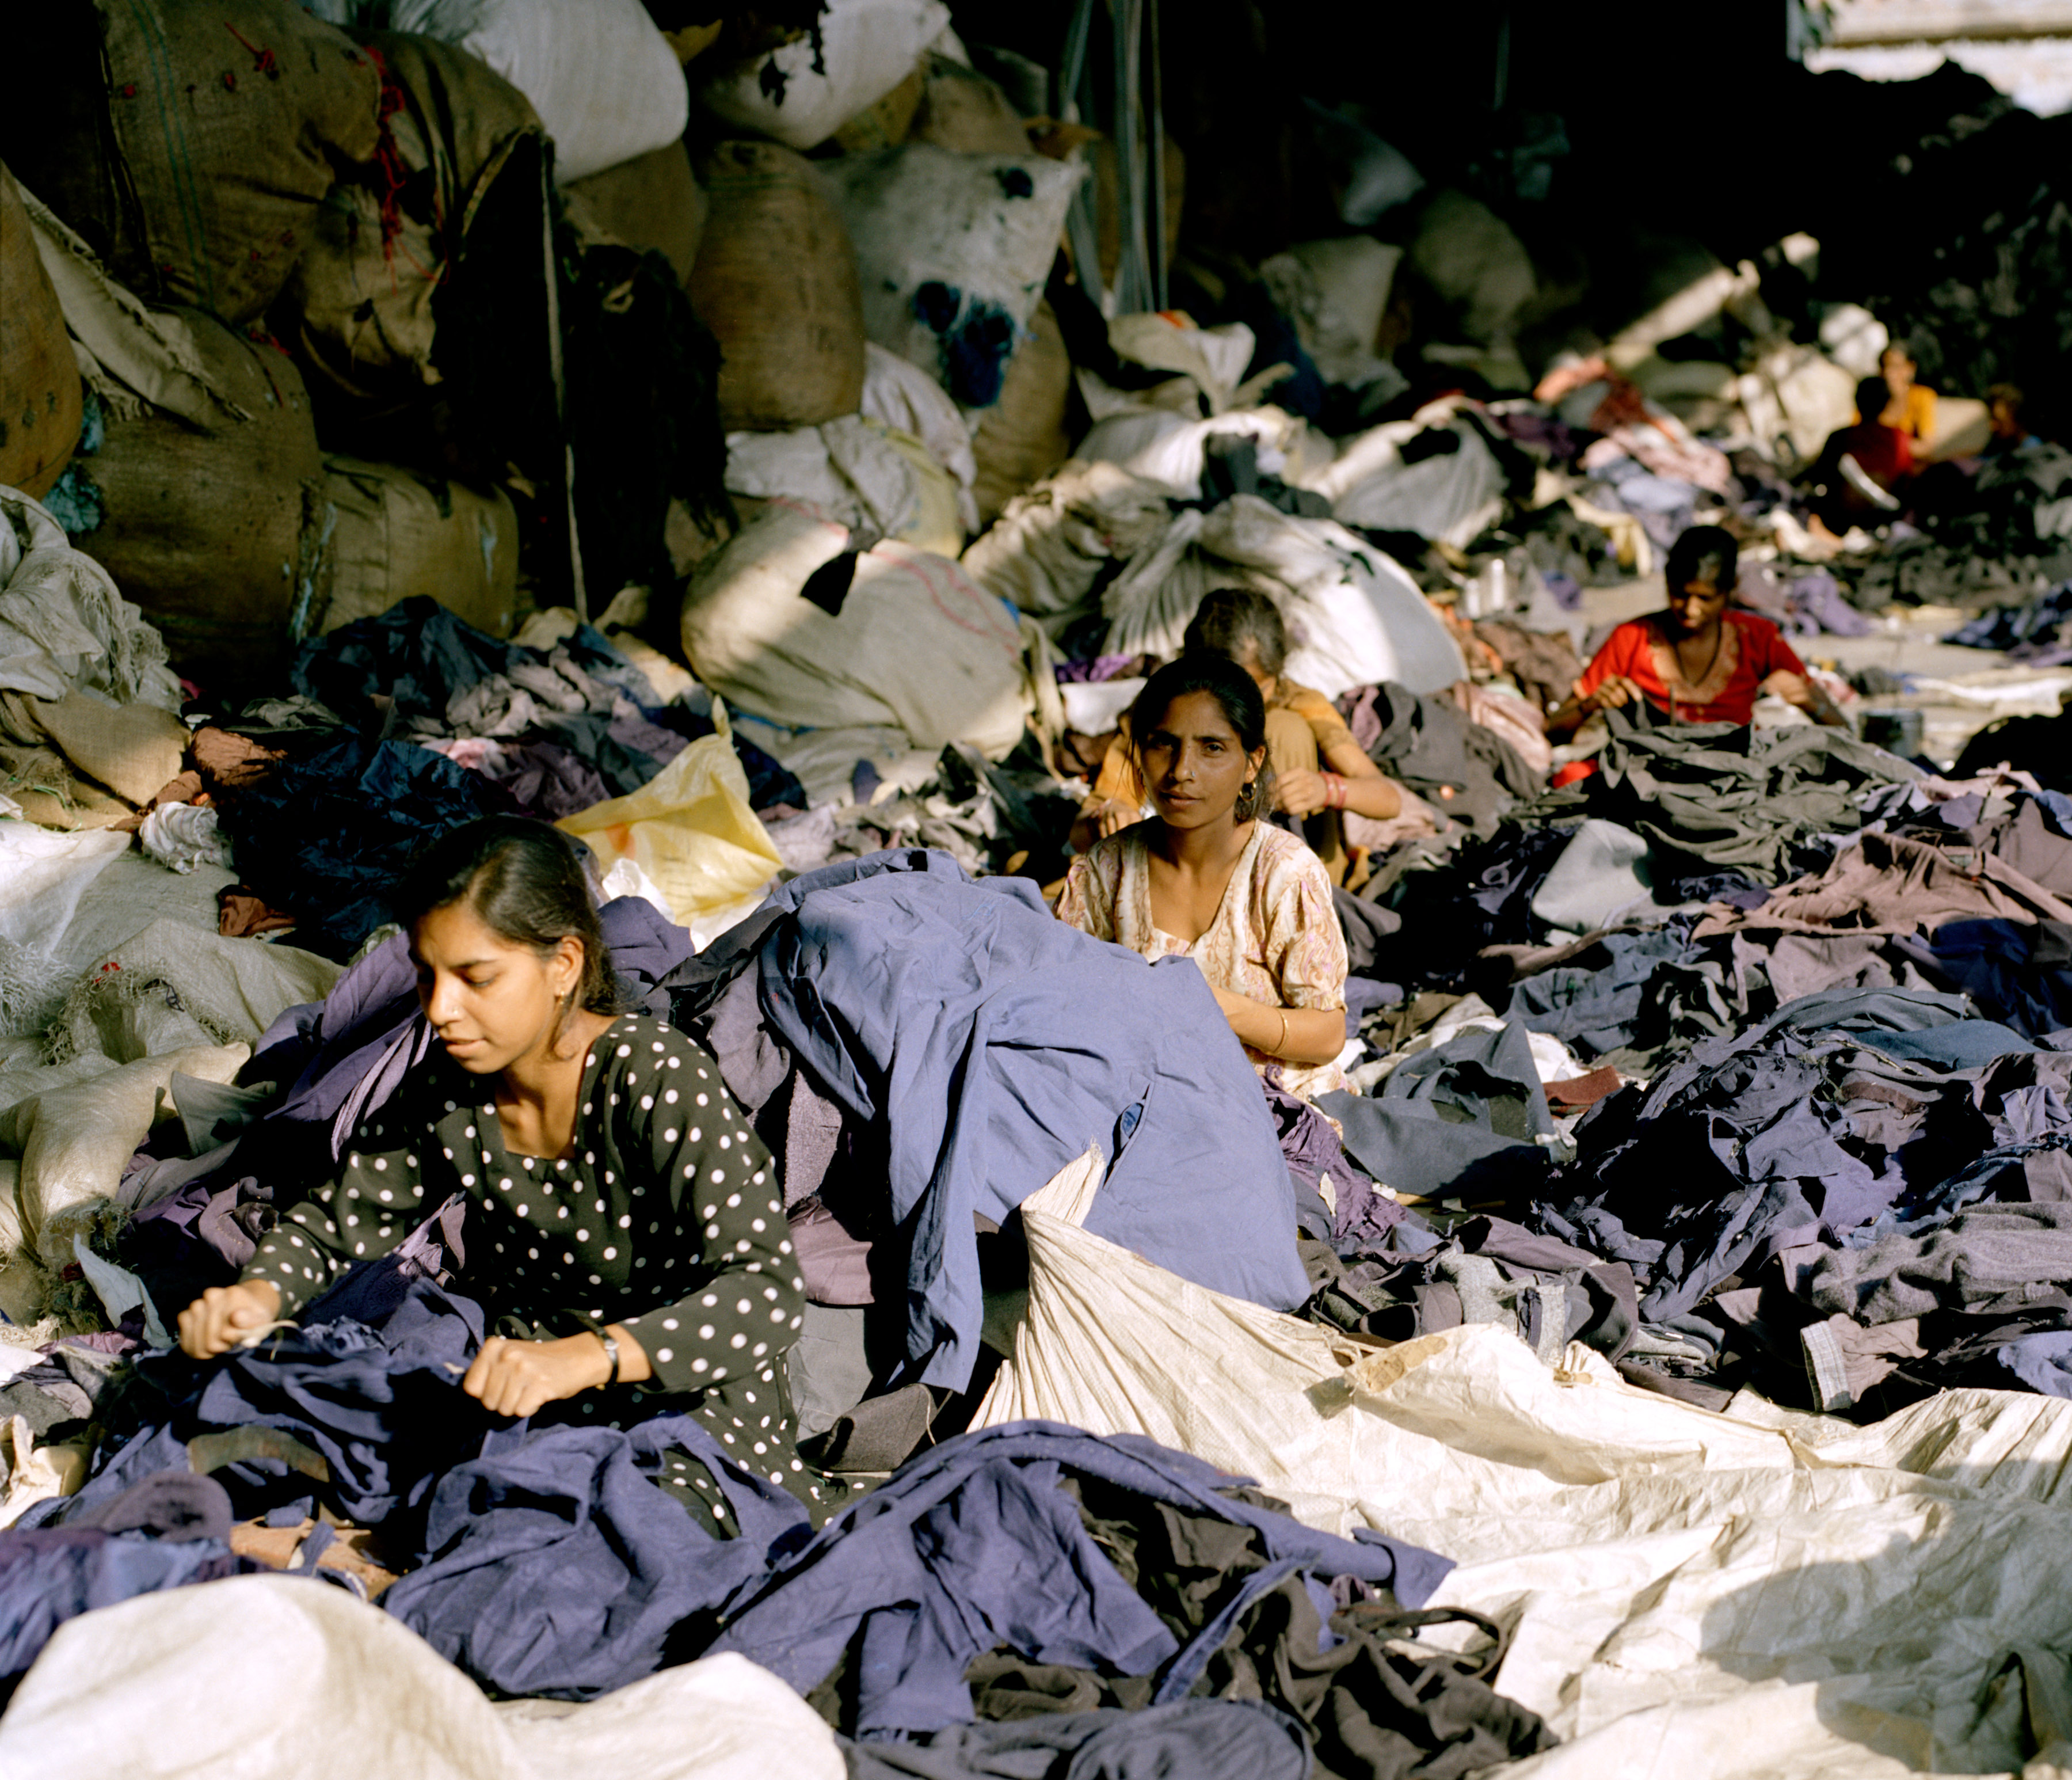 Frauen zerschneiden Jacken und Oberteile; die eingenähten Etiketten werden herausgeschnitten - Marken und Labelsangaben werden bei dem Prozess wertlos.